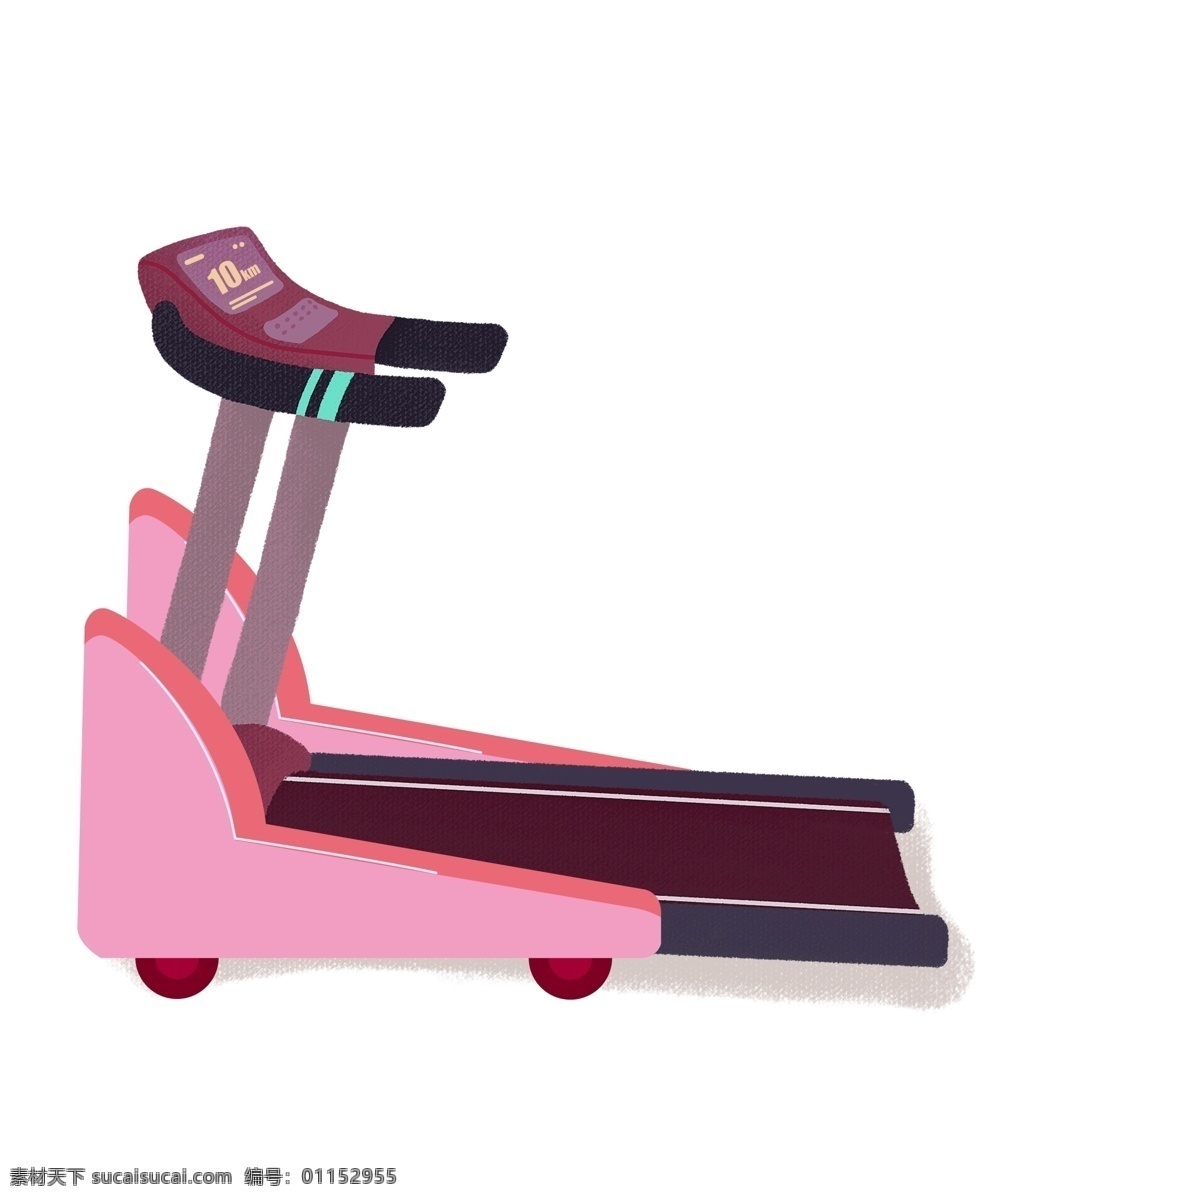 卡通 手绘 台 跑步机 粉色 创意 健身器械 健身器材 插画